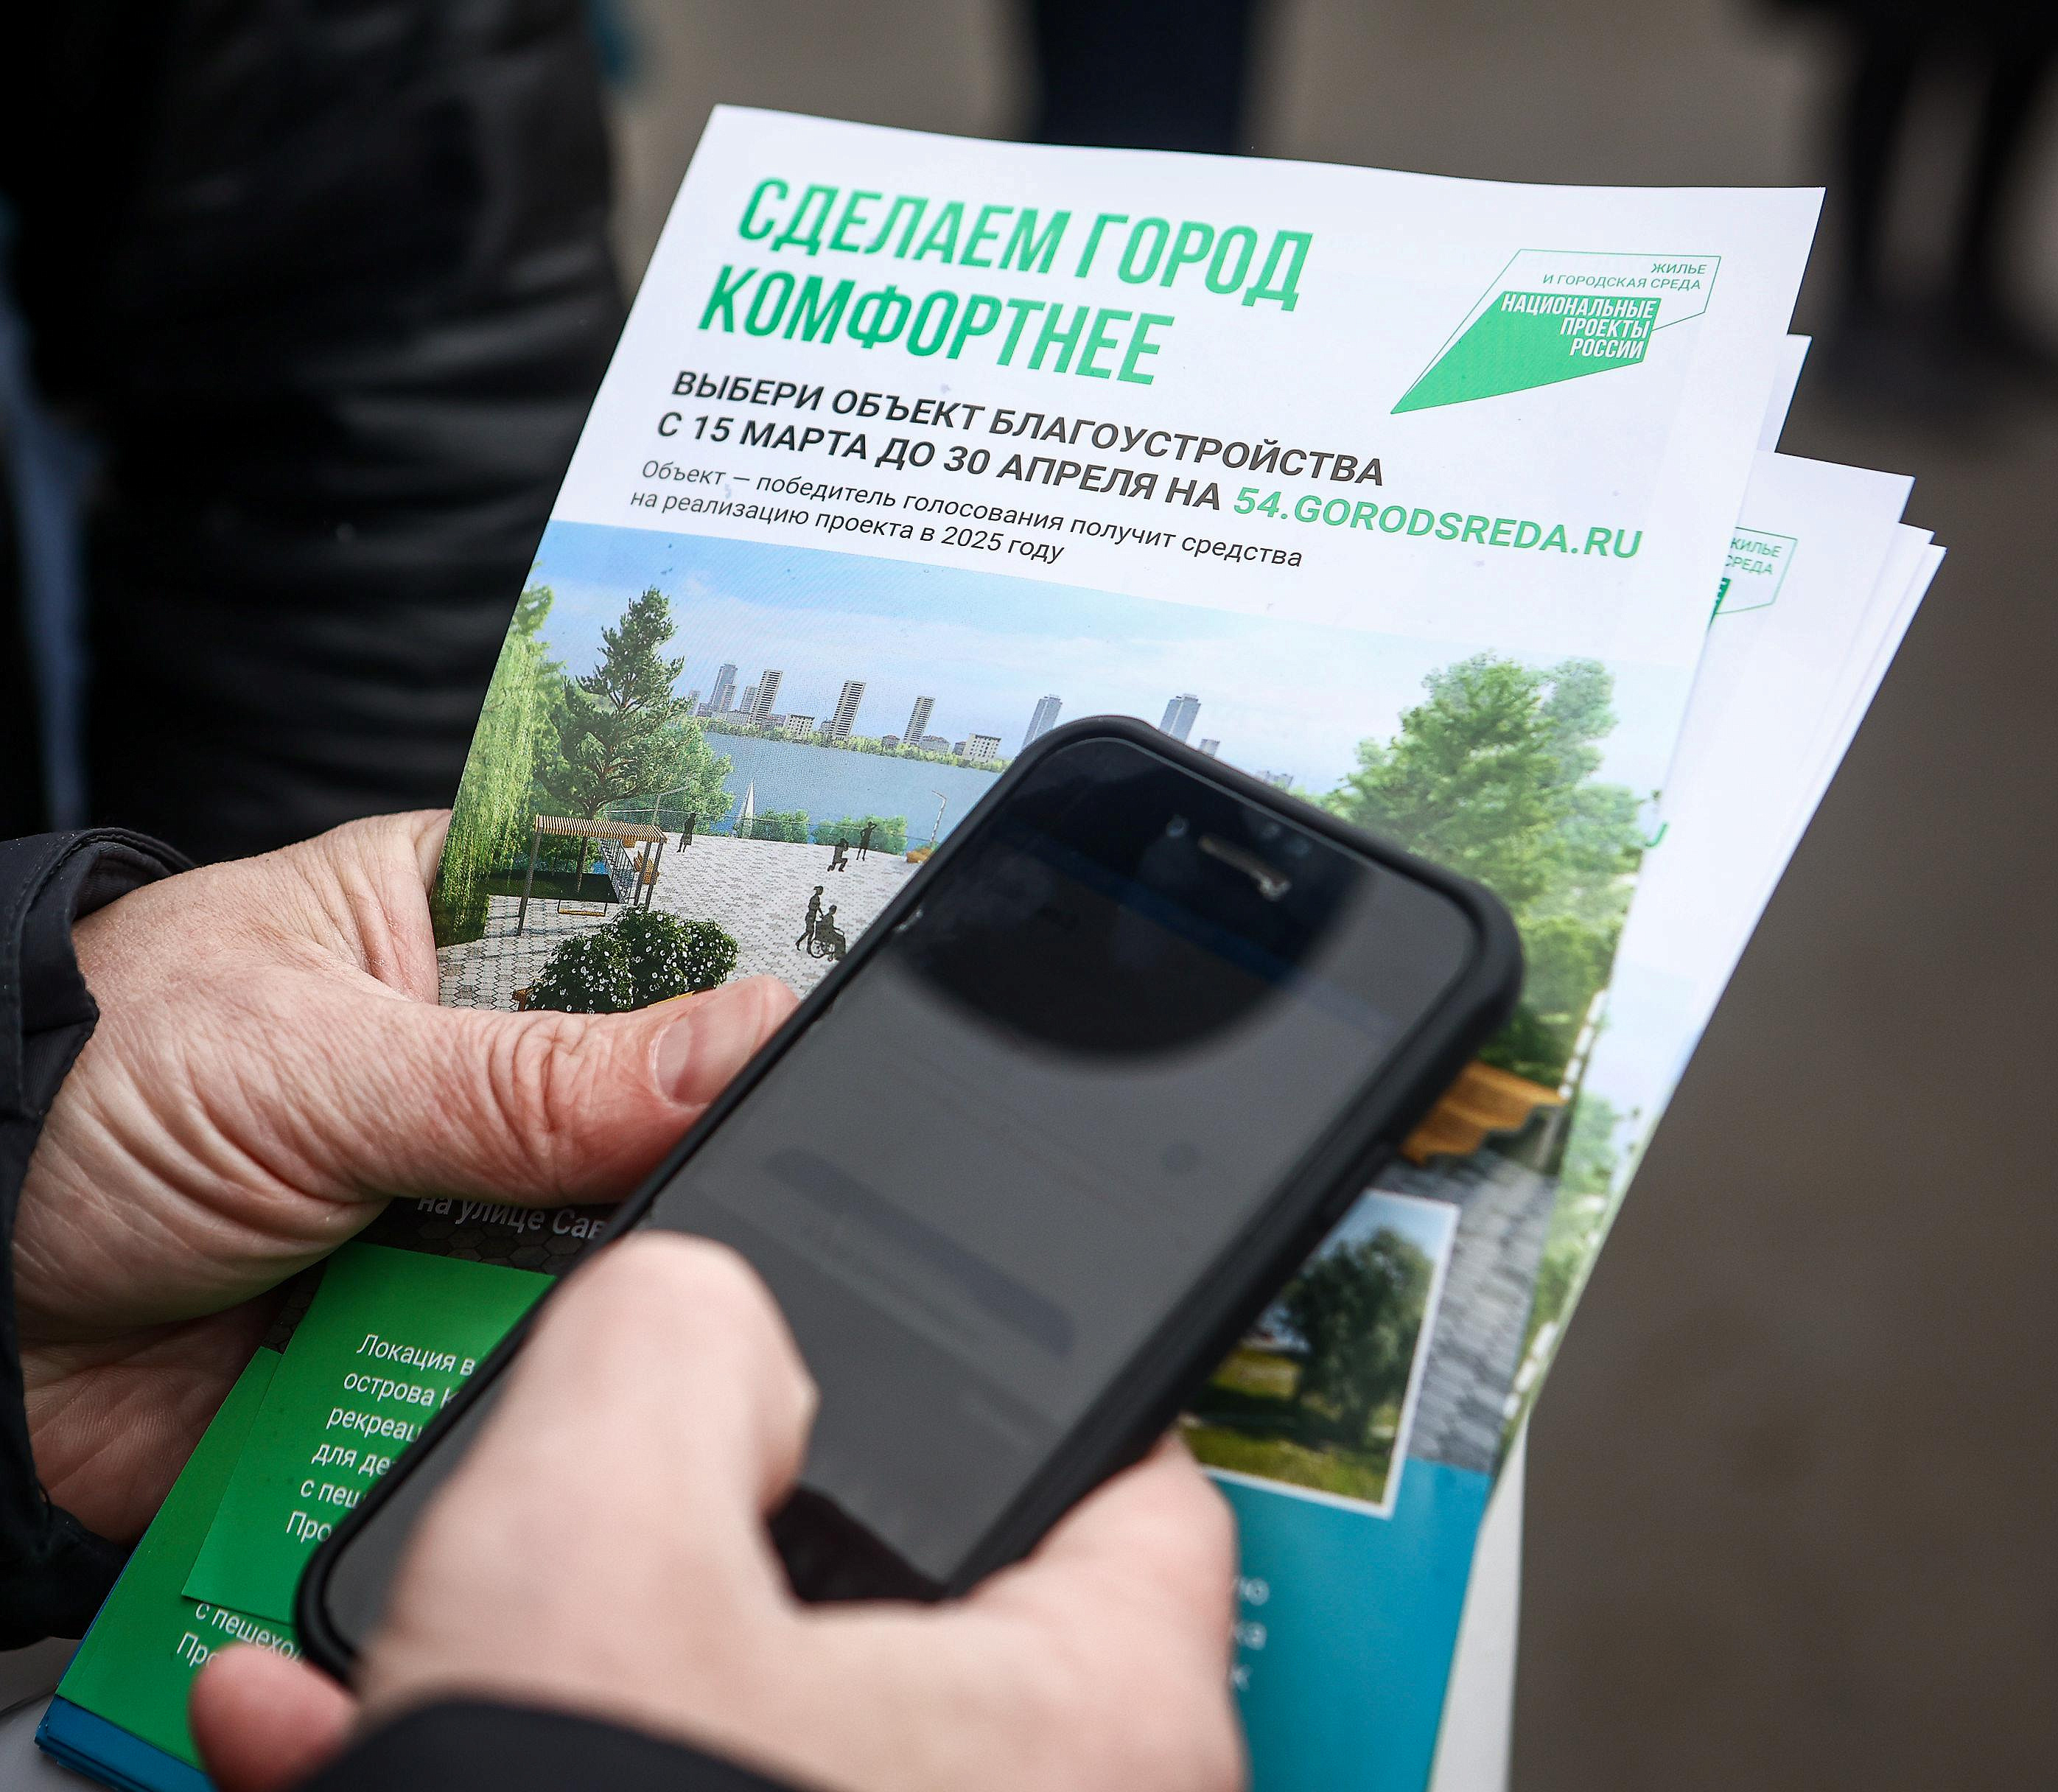 Комфортный день зелёного голосования устроят 19 апреля в Новосибирске